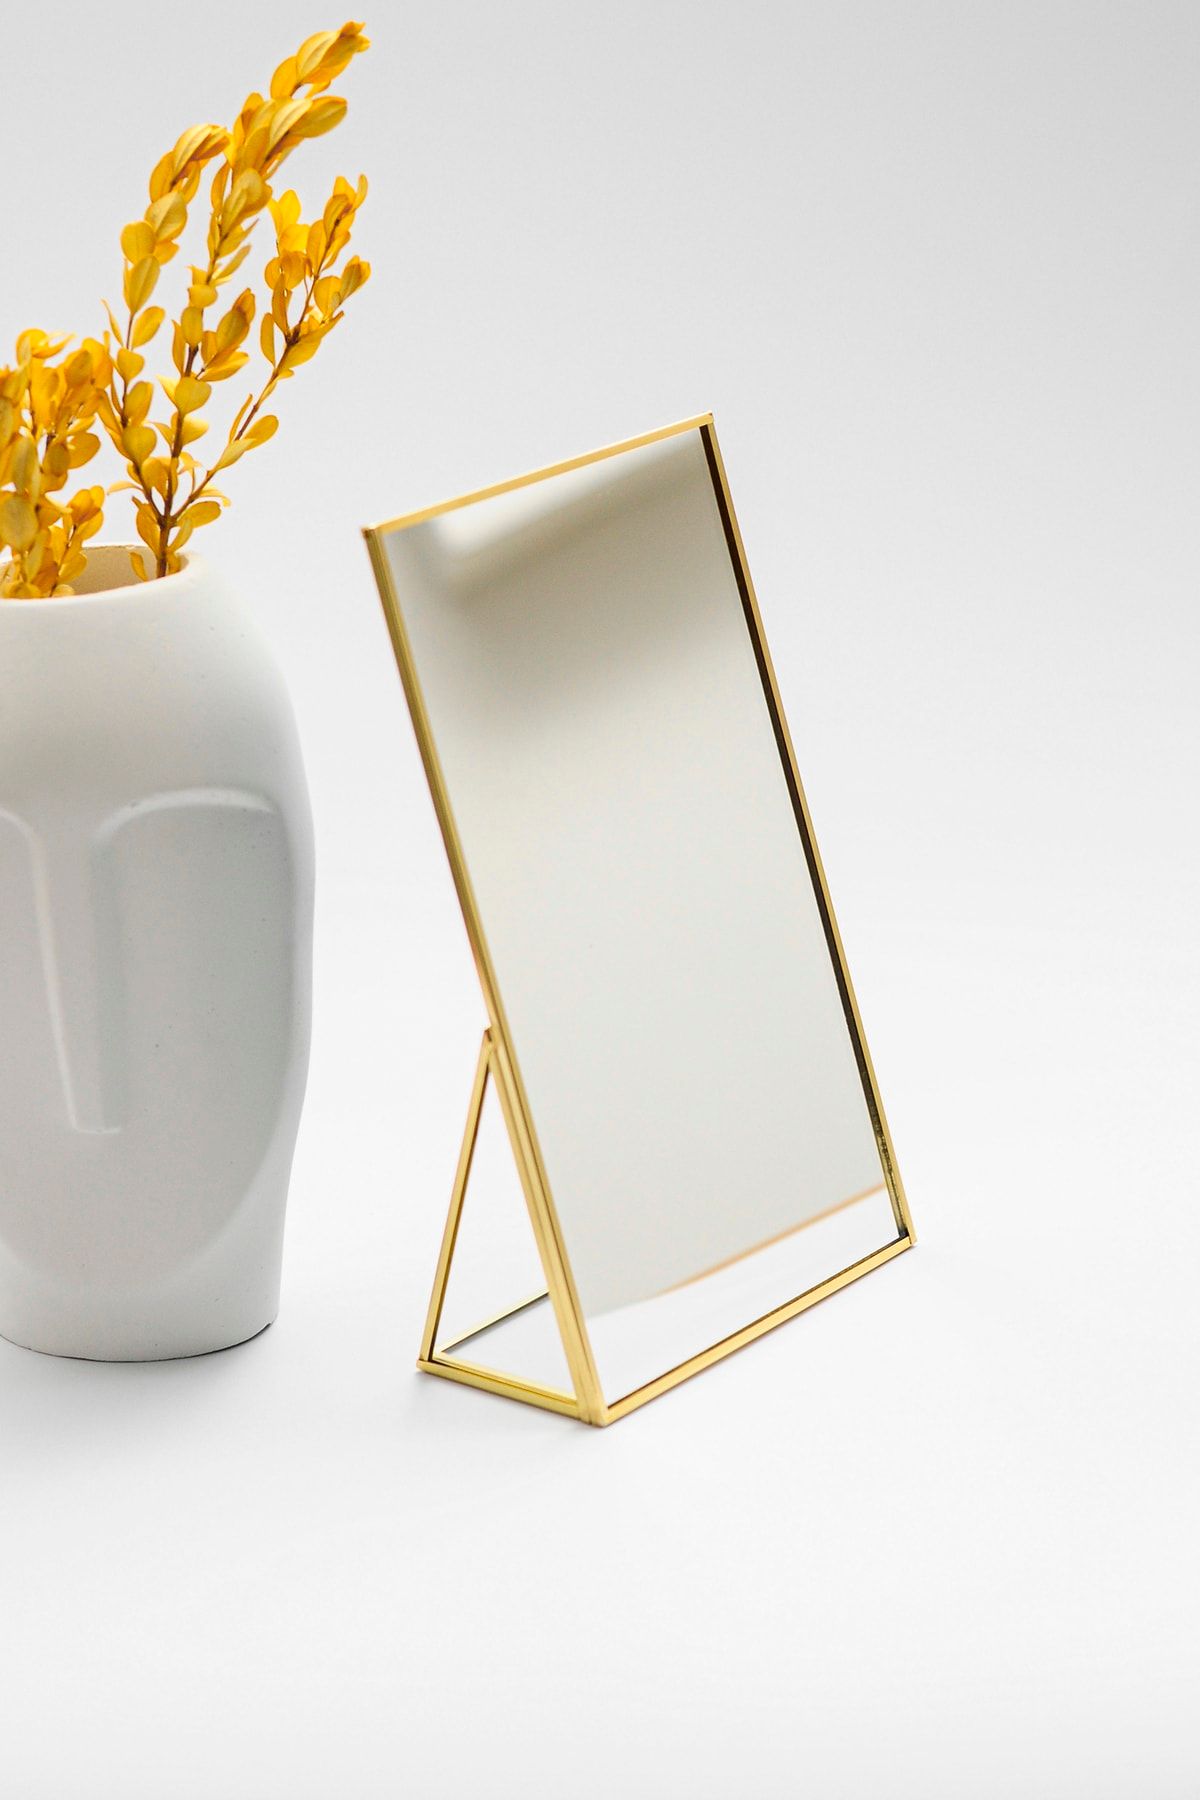 El Crea Designs 25x15cm Pirinç Gold Kristal Makyaj Aynası Masaüstü Dekoratif Iskandinav Tarzı Banyo Bohem Dekoras